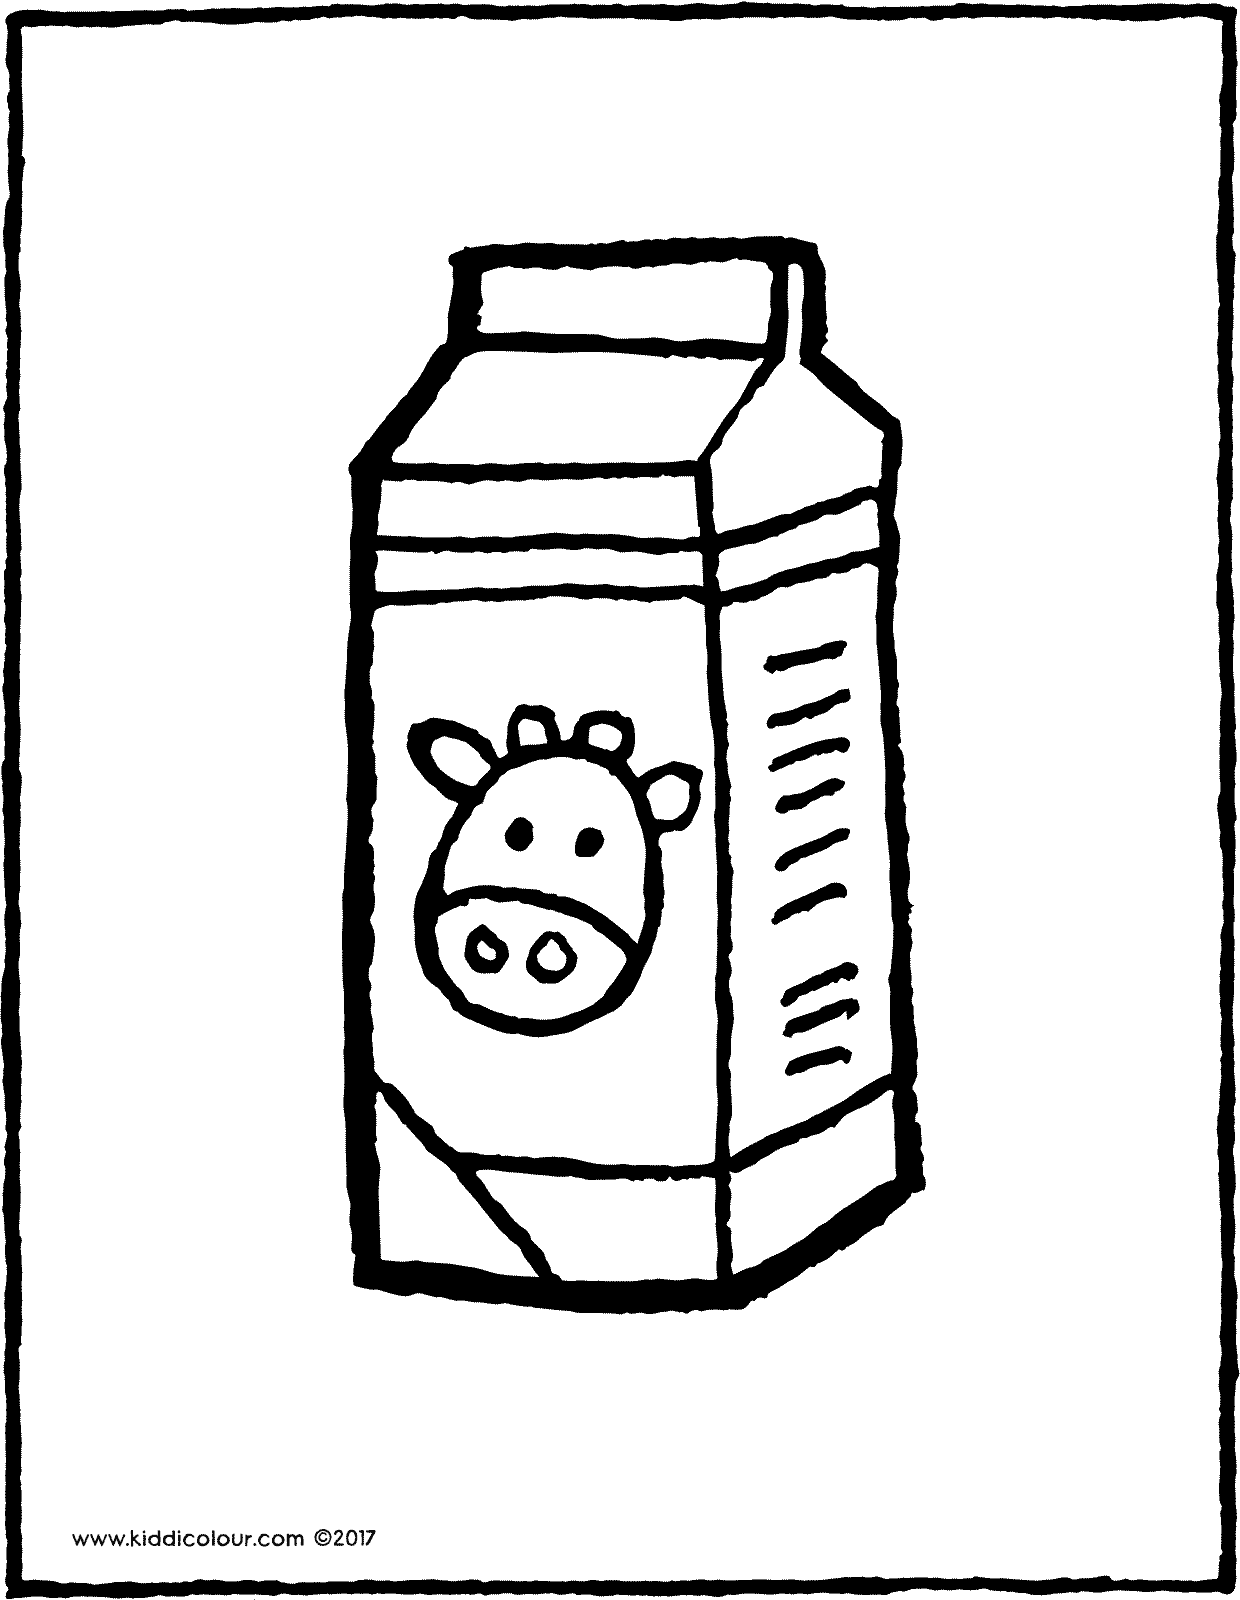 Раскраски Молоко - Смотрите, скачивайте, и распечатывайте лучшие варианты раскрасок